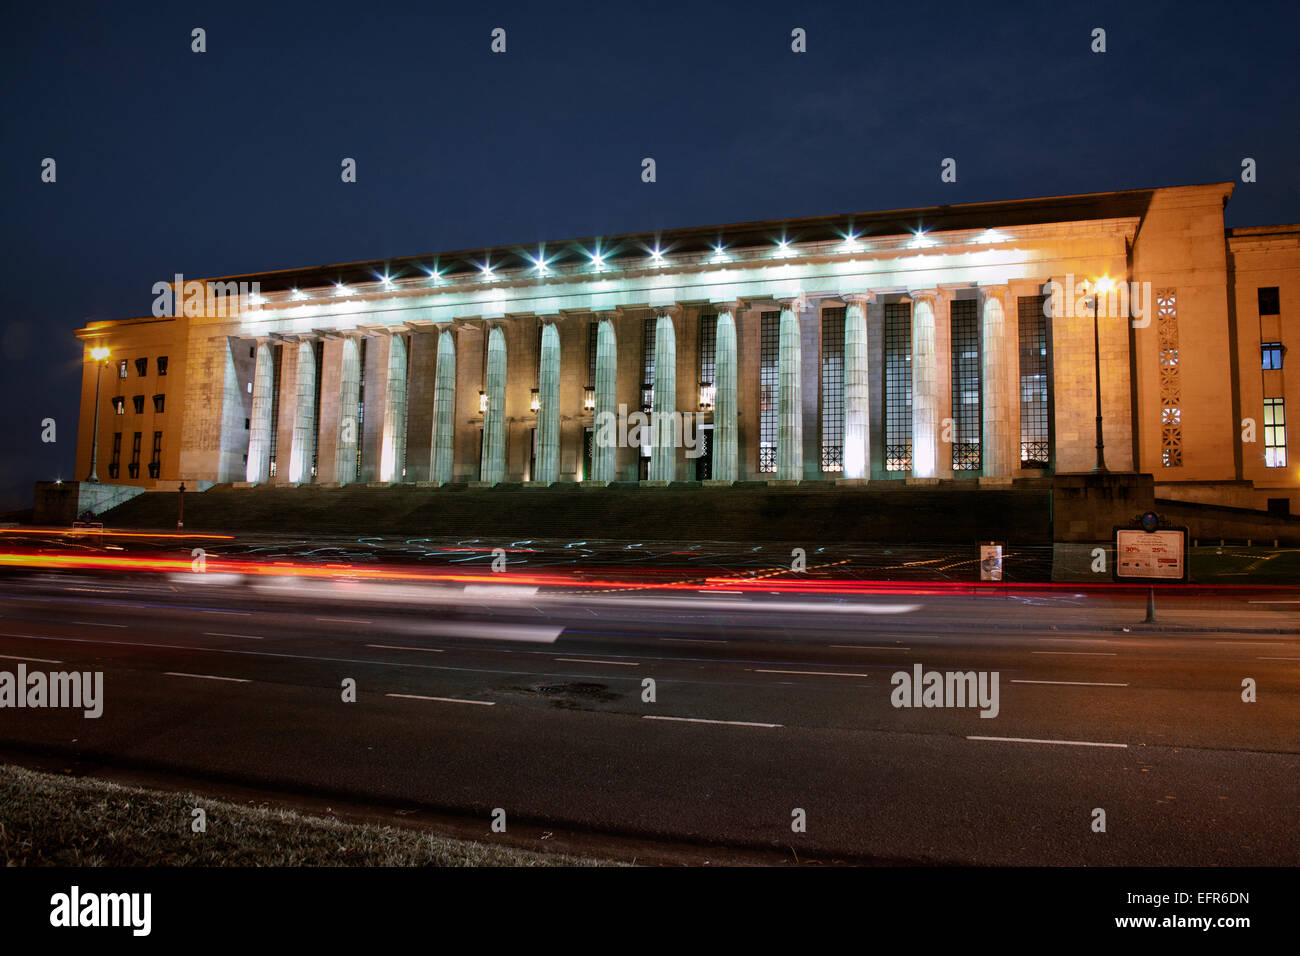 Universidad de derecho edificio de noche, Caba, Buenos Aires, Argentina Foto de stock